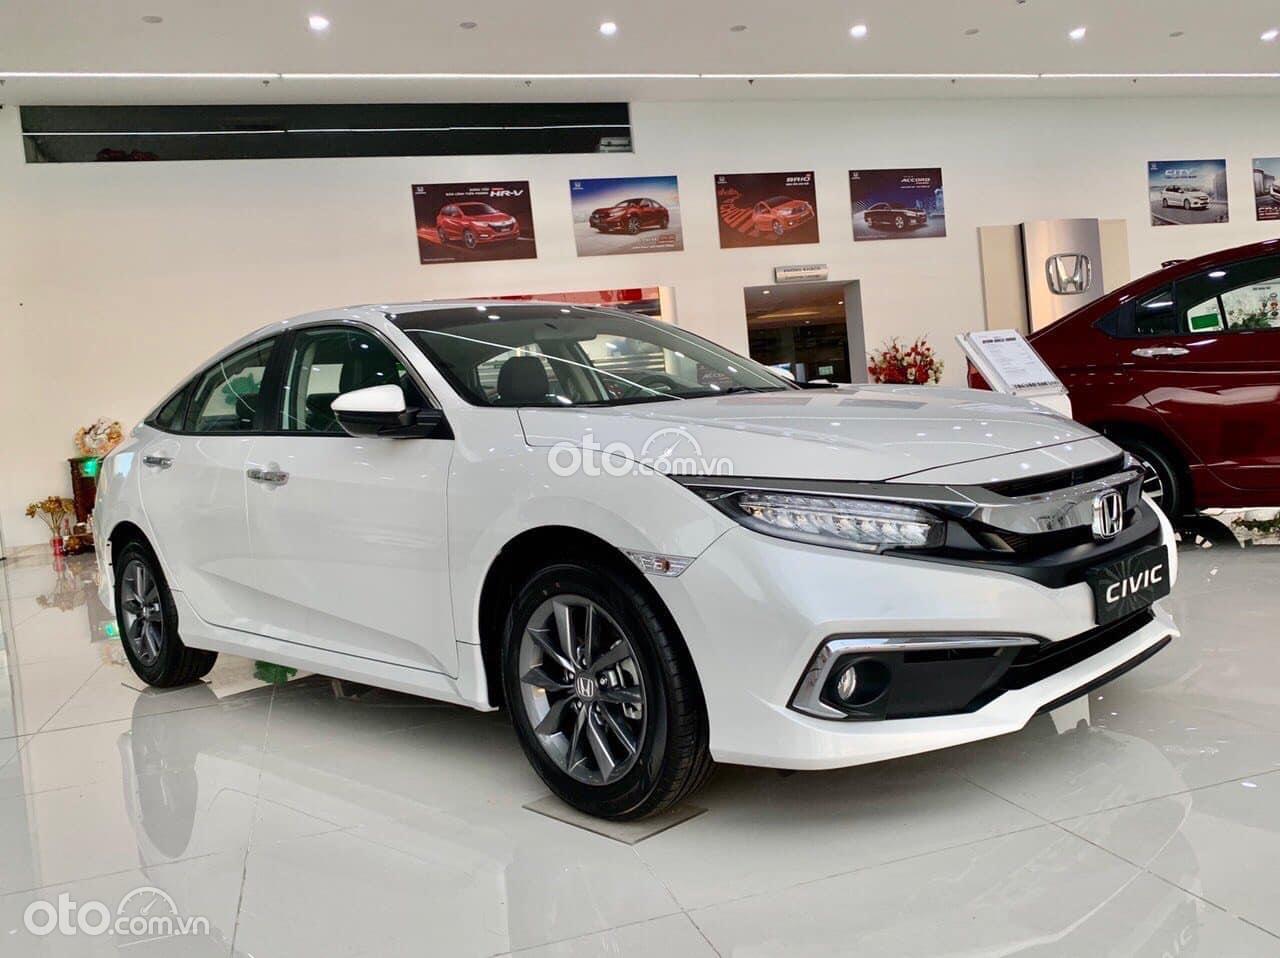 Honda Civic 2021 Đồng Nai  Trọng tâm thấp Chuẩn chất thể thao  Honda Ôtô  Biên Hòa